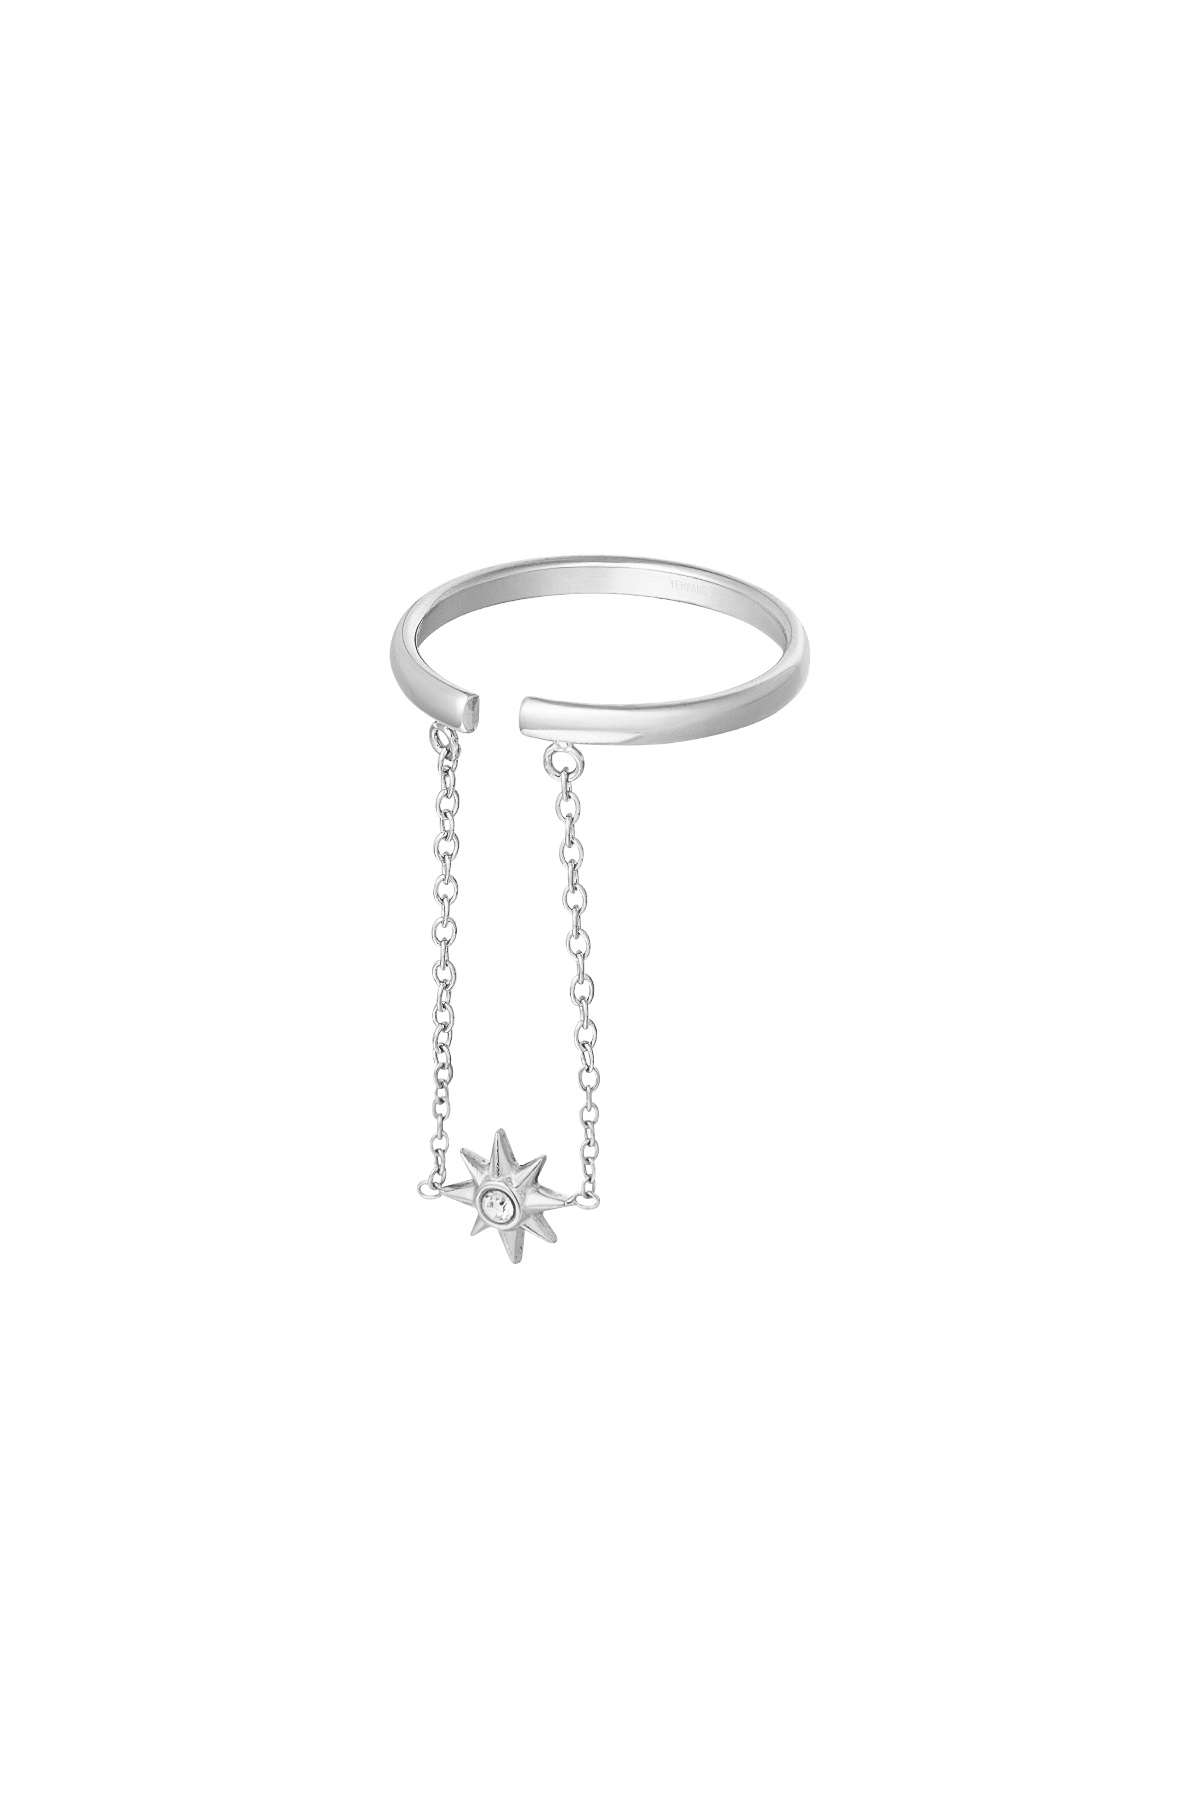 Anillo estrella con cadena - plata h5 